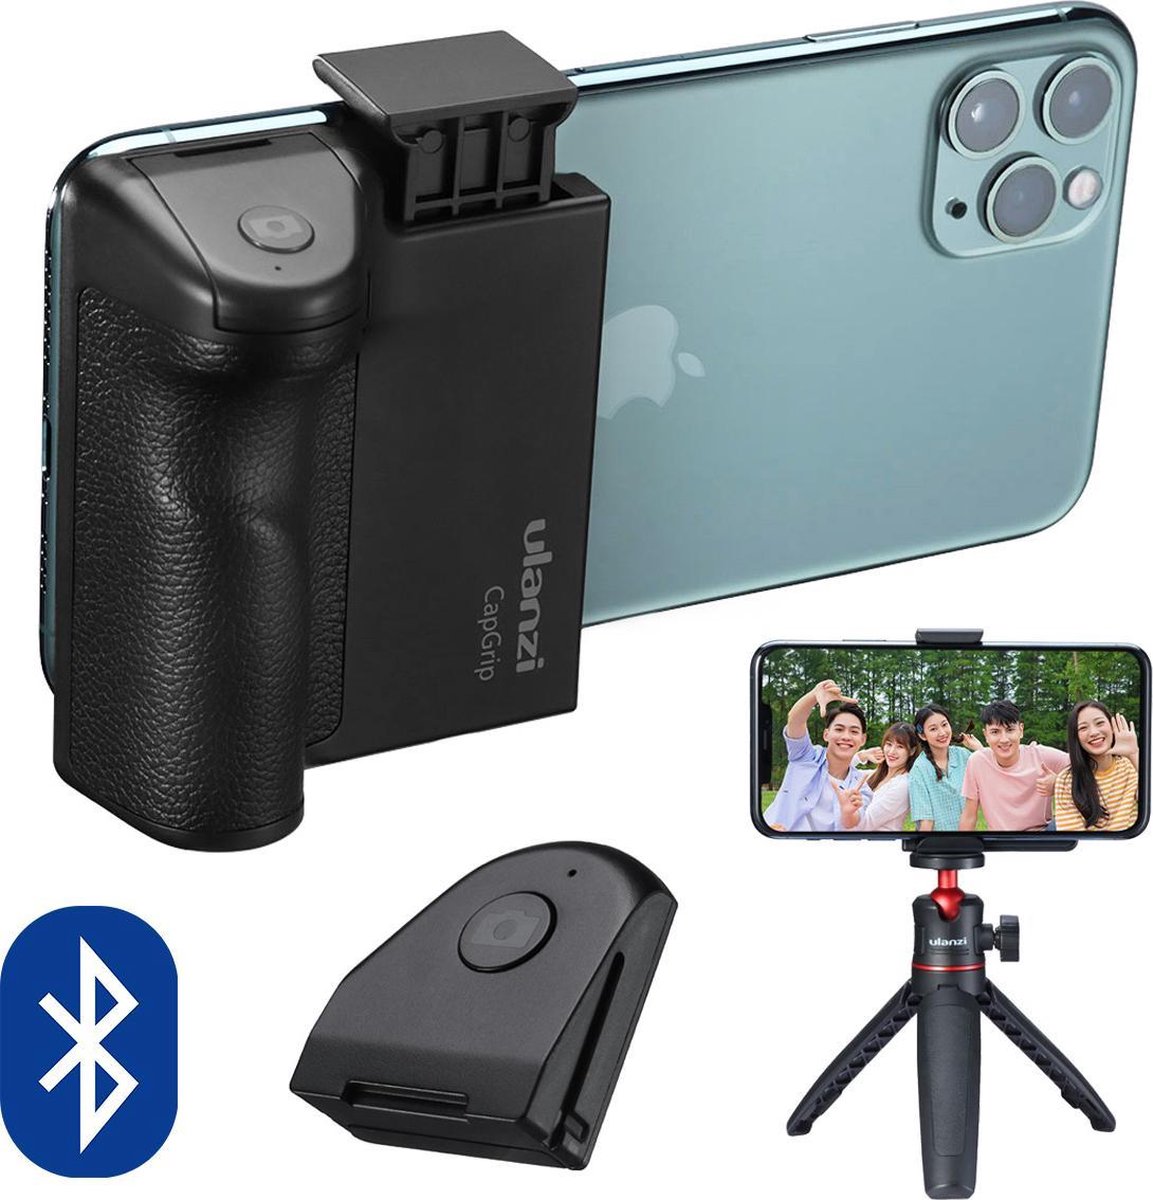 Ulanzi CapGrip smartphone camera grip met Bluetooth afstandsbediening - Universeel tot 8cm breed - 1/4 inch schroefaansluiting - Ulanzi